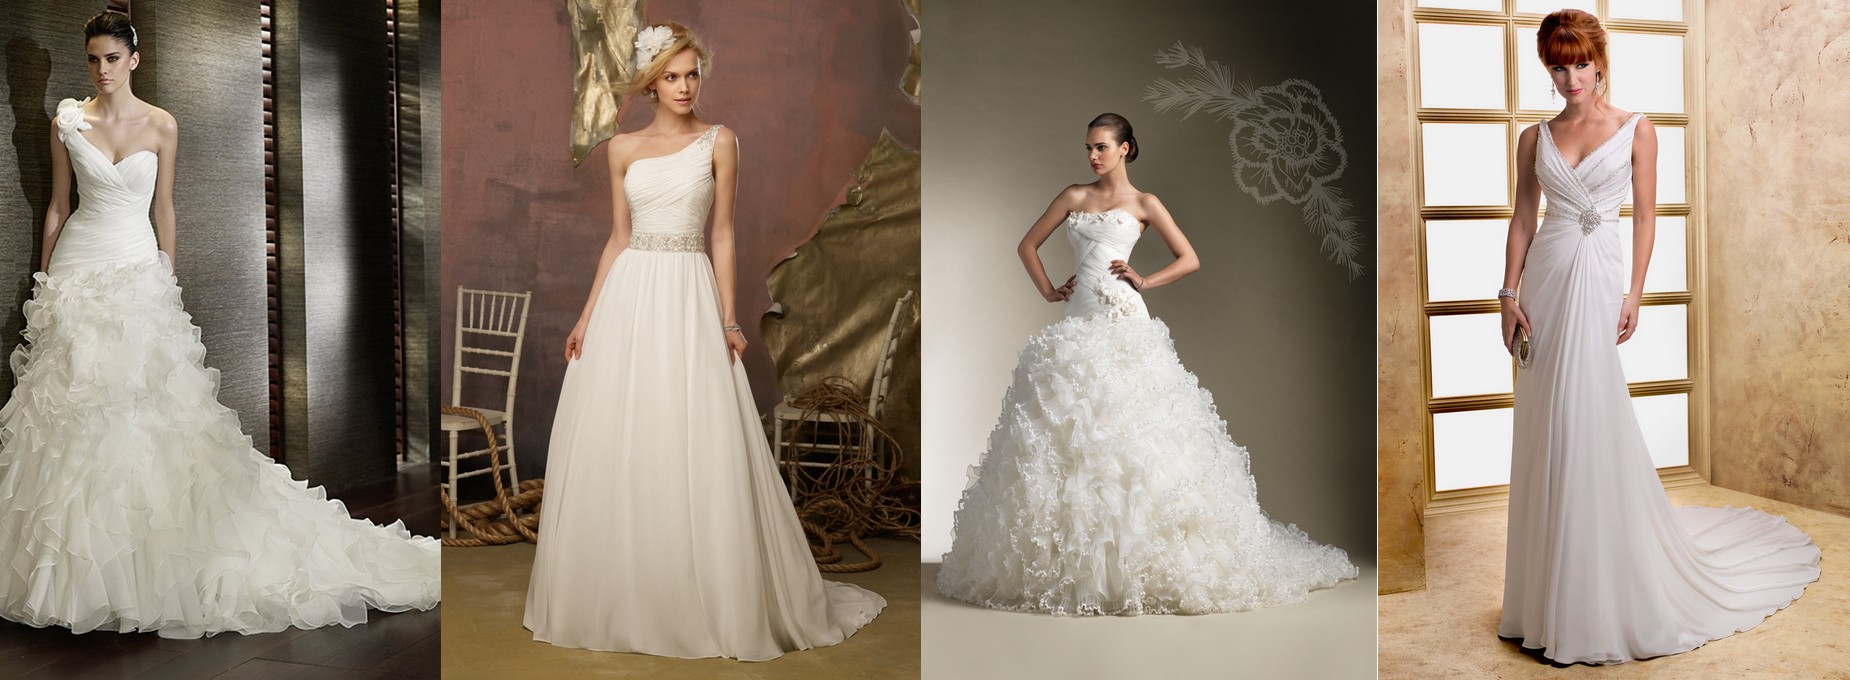 Cette année, quelle robe de mariée est la plus populaire? Que préfèrent les filles le plus? Ici, dans Boutique 1robe en ligne, nous vous révélons tous ces secrets. Vous trouverez les robes les plus belles.